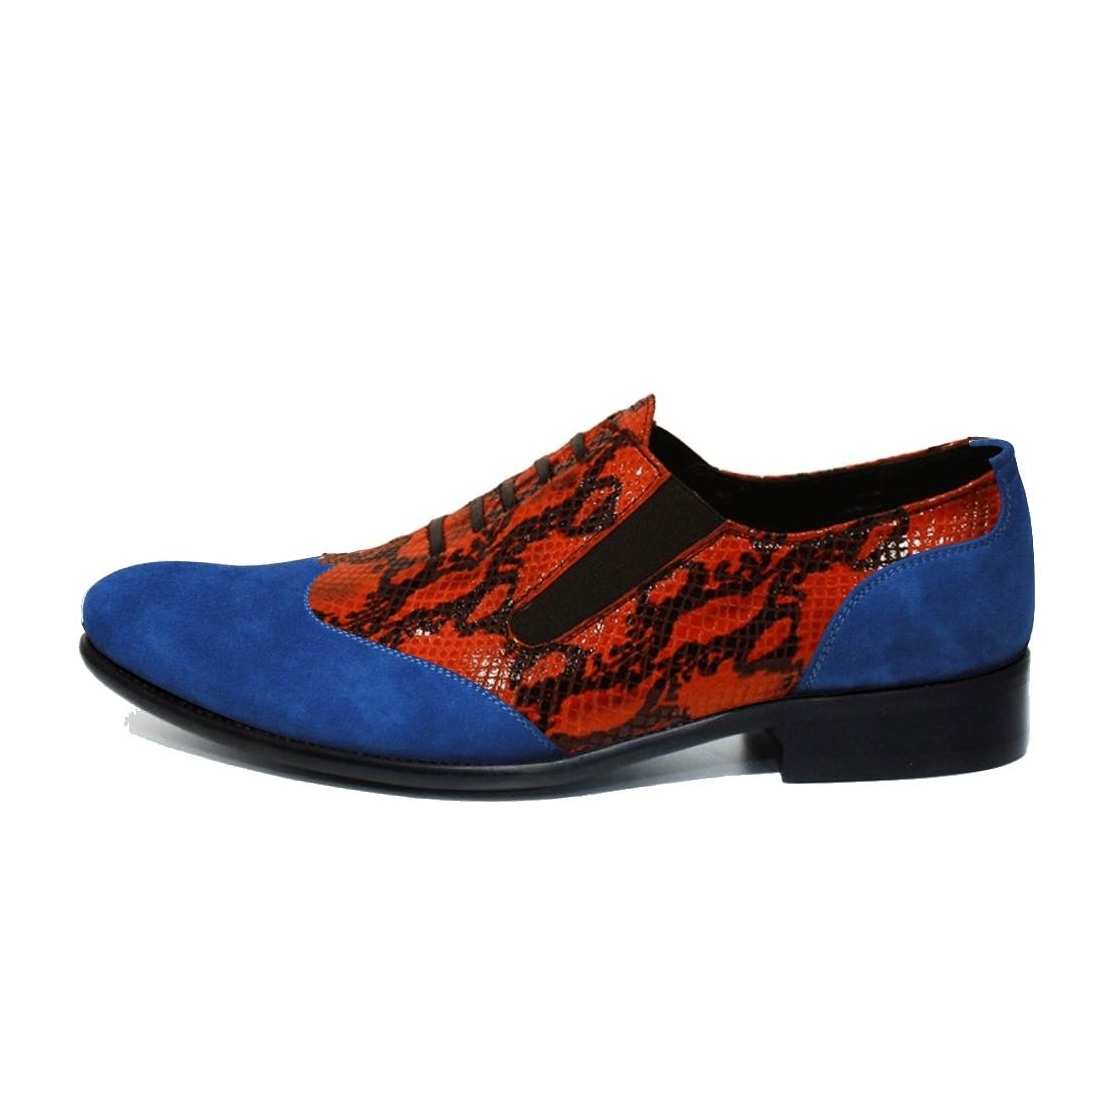 Modello Baccalto - Zapatillas Sin Cordones - Handmade Colorful Italian Leather Shoes